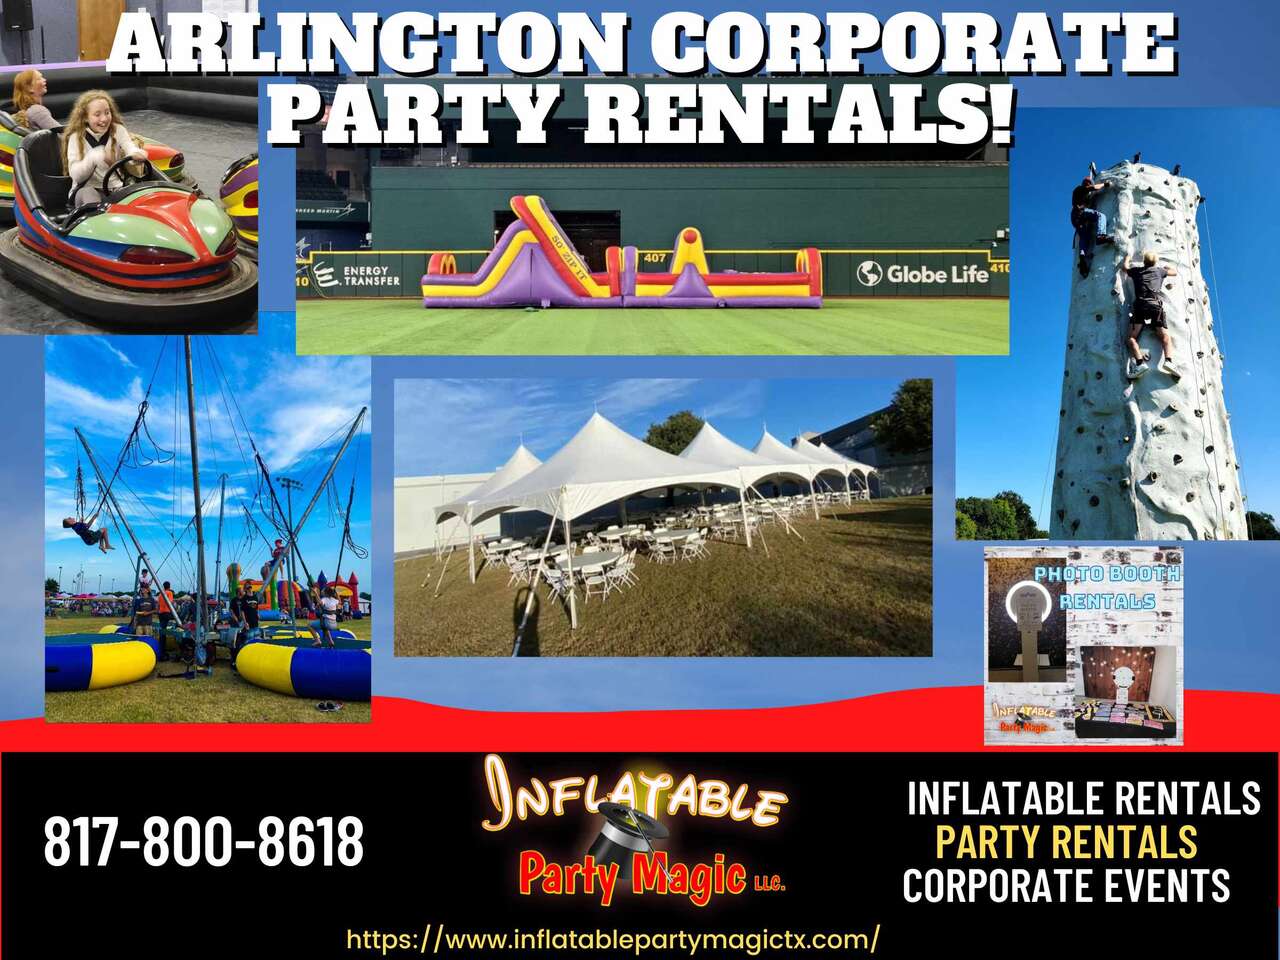 Corporate Party Rentals in Arlington Tx